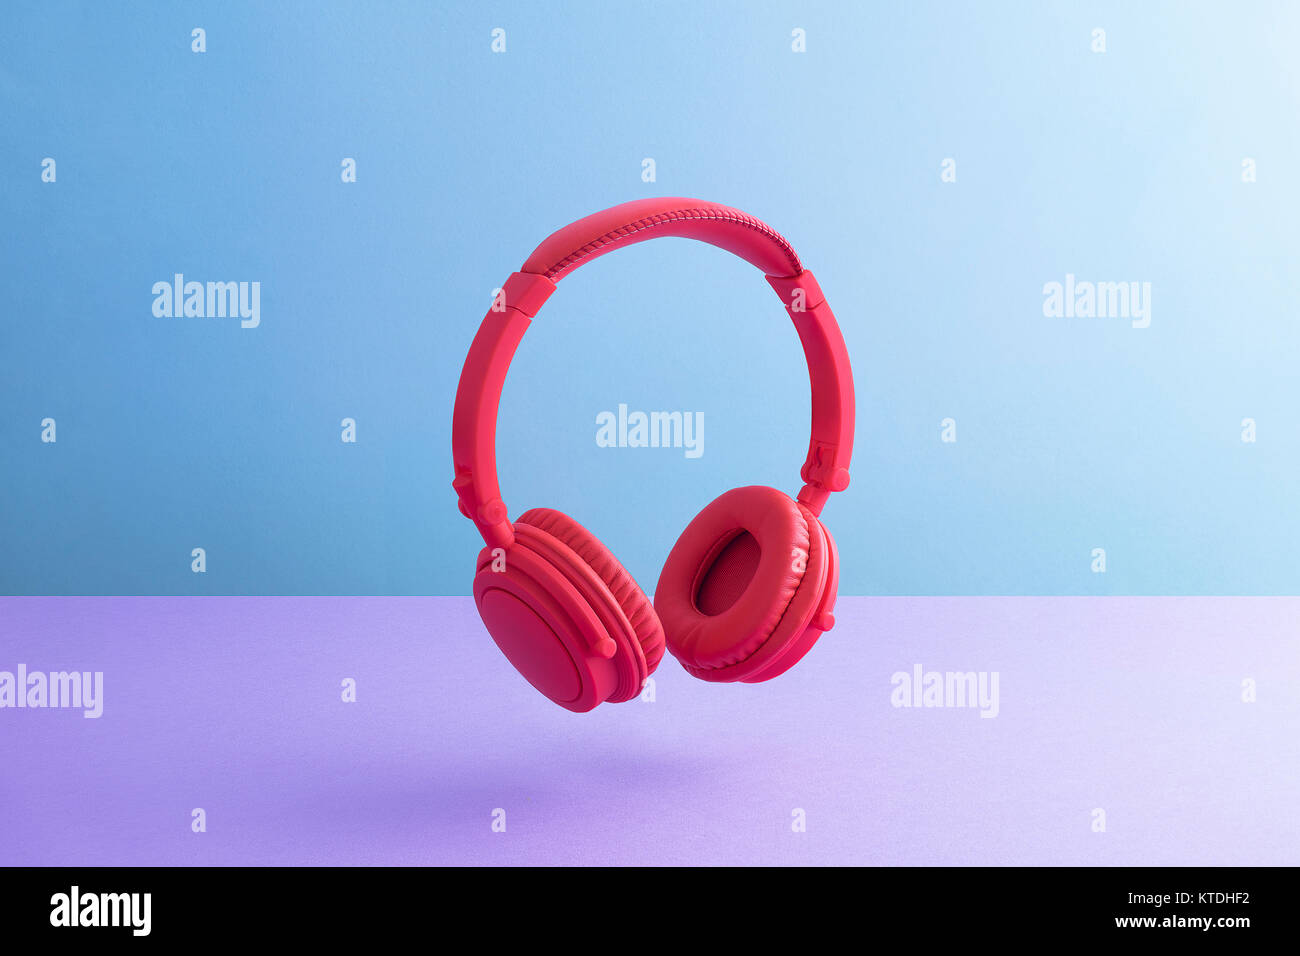 Red wireless headphones Stock Photo